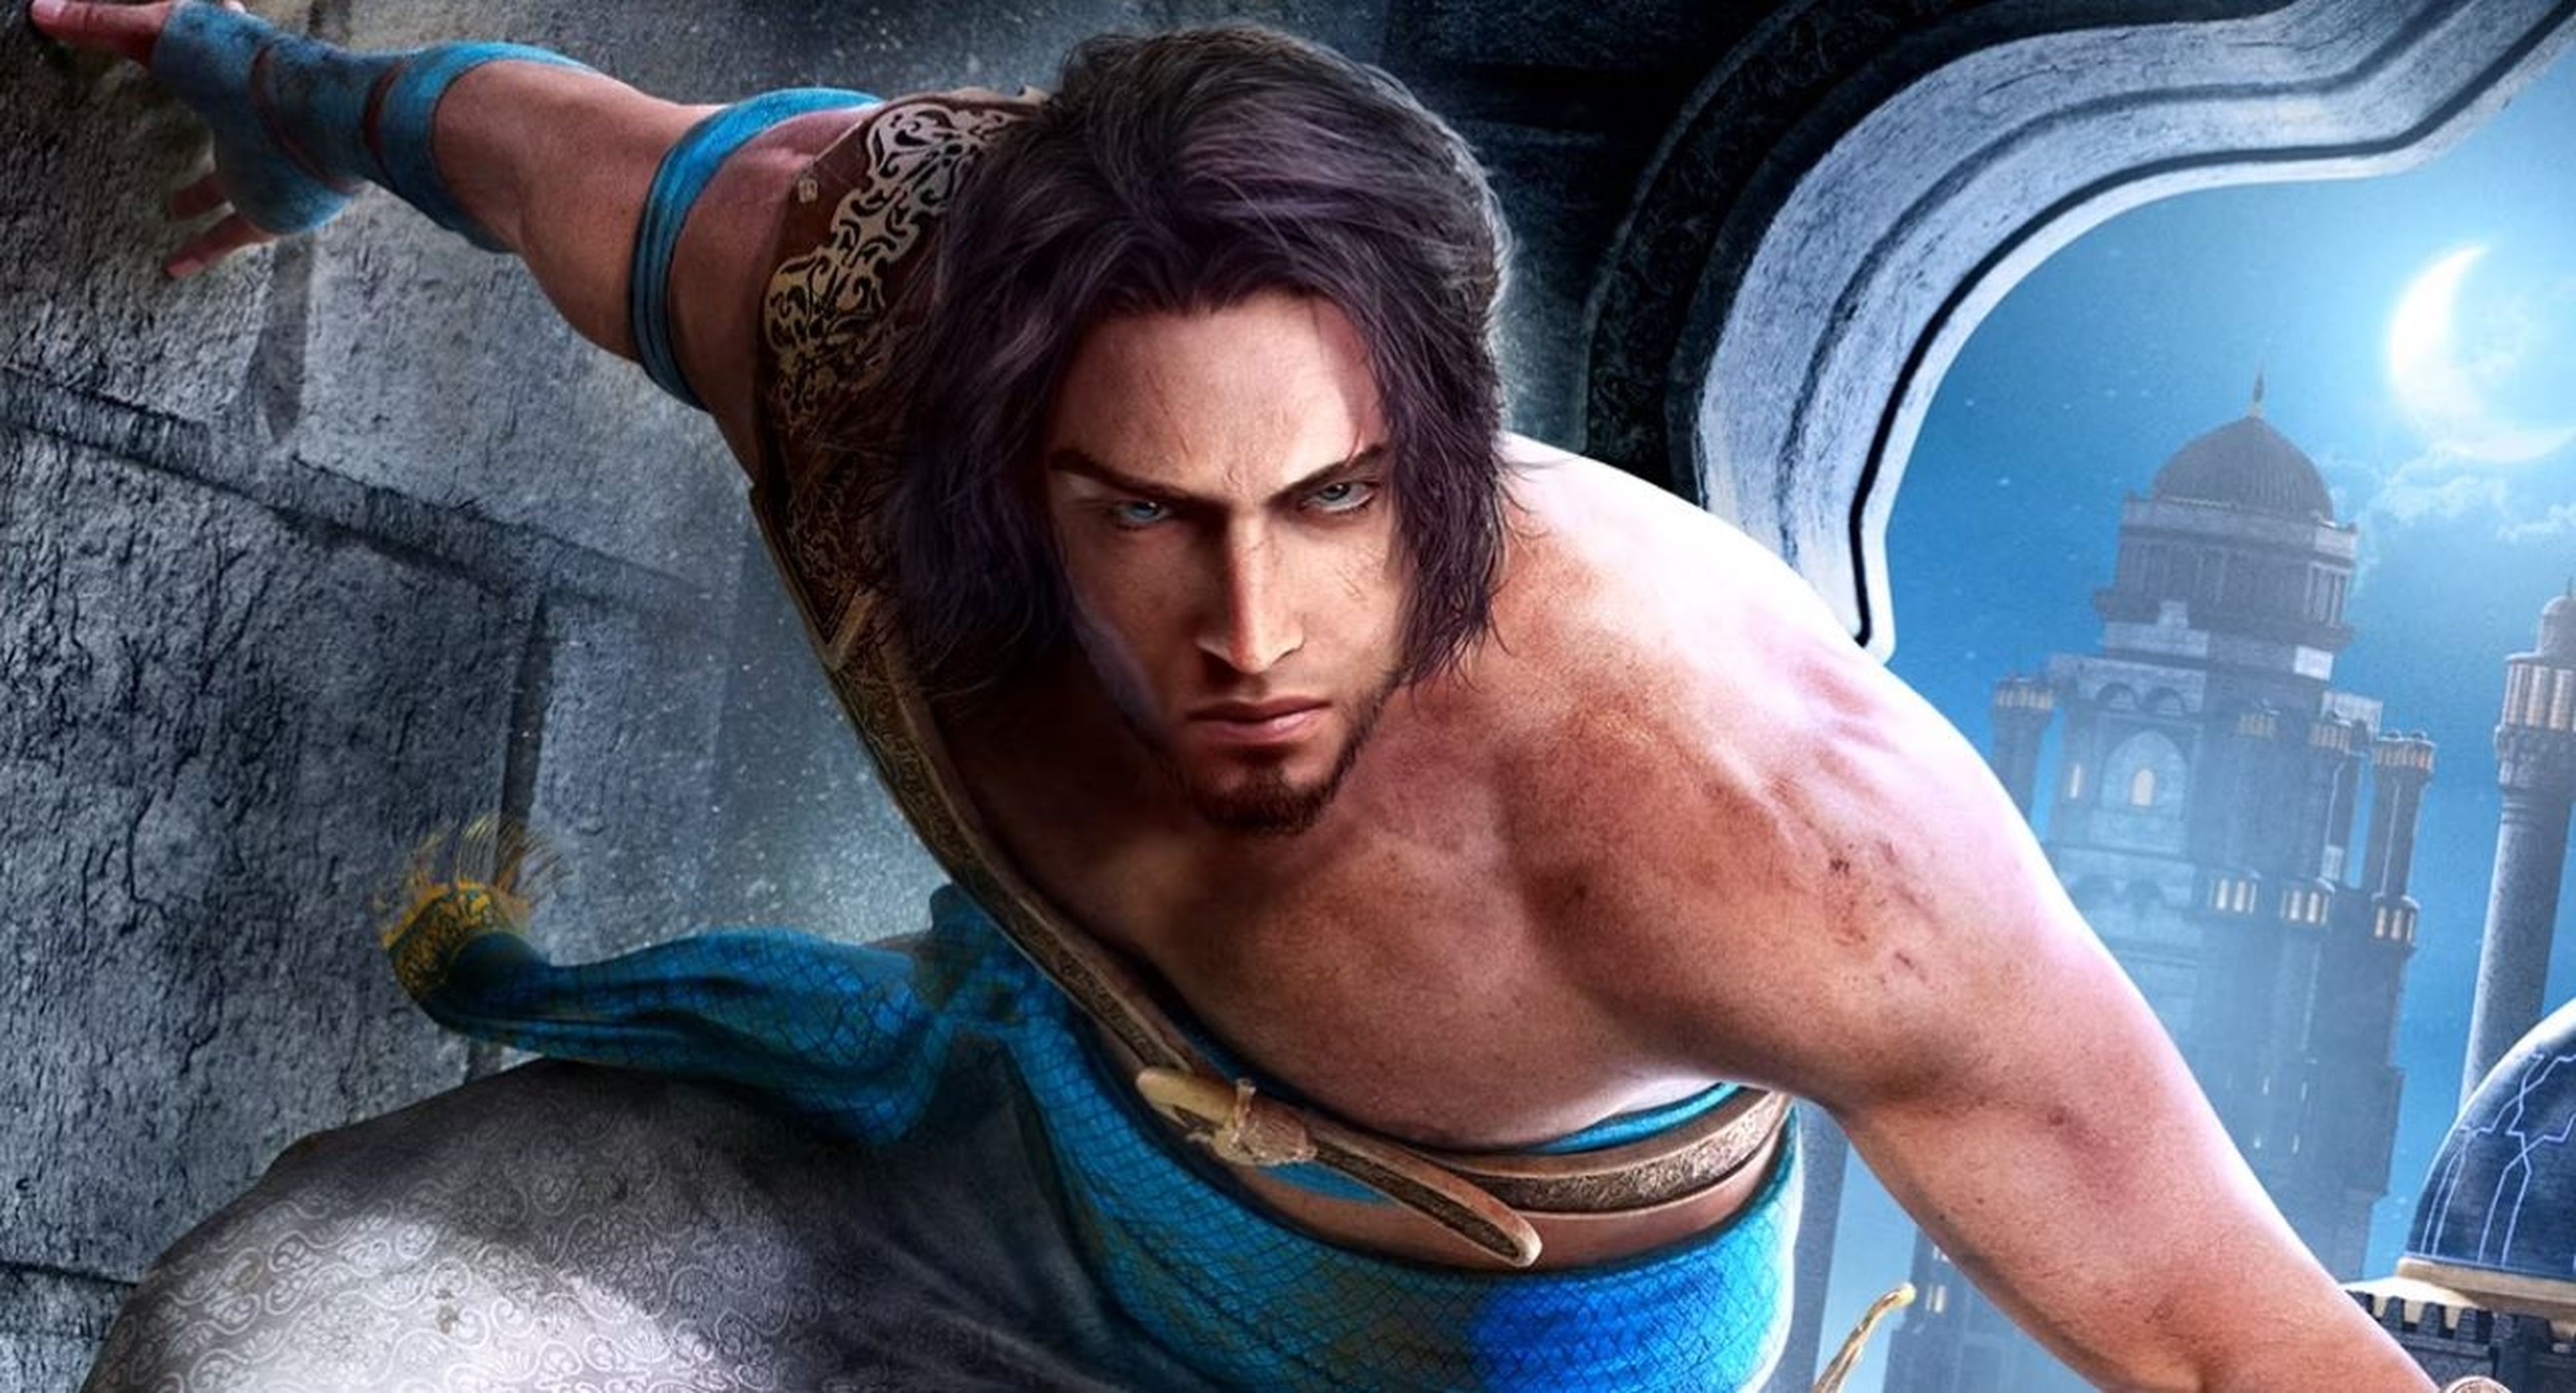 Prince of Persia: Las Arenas del Tiempo Remake